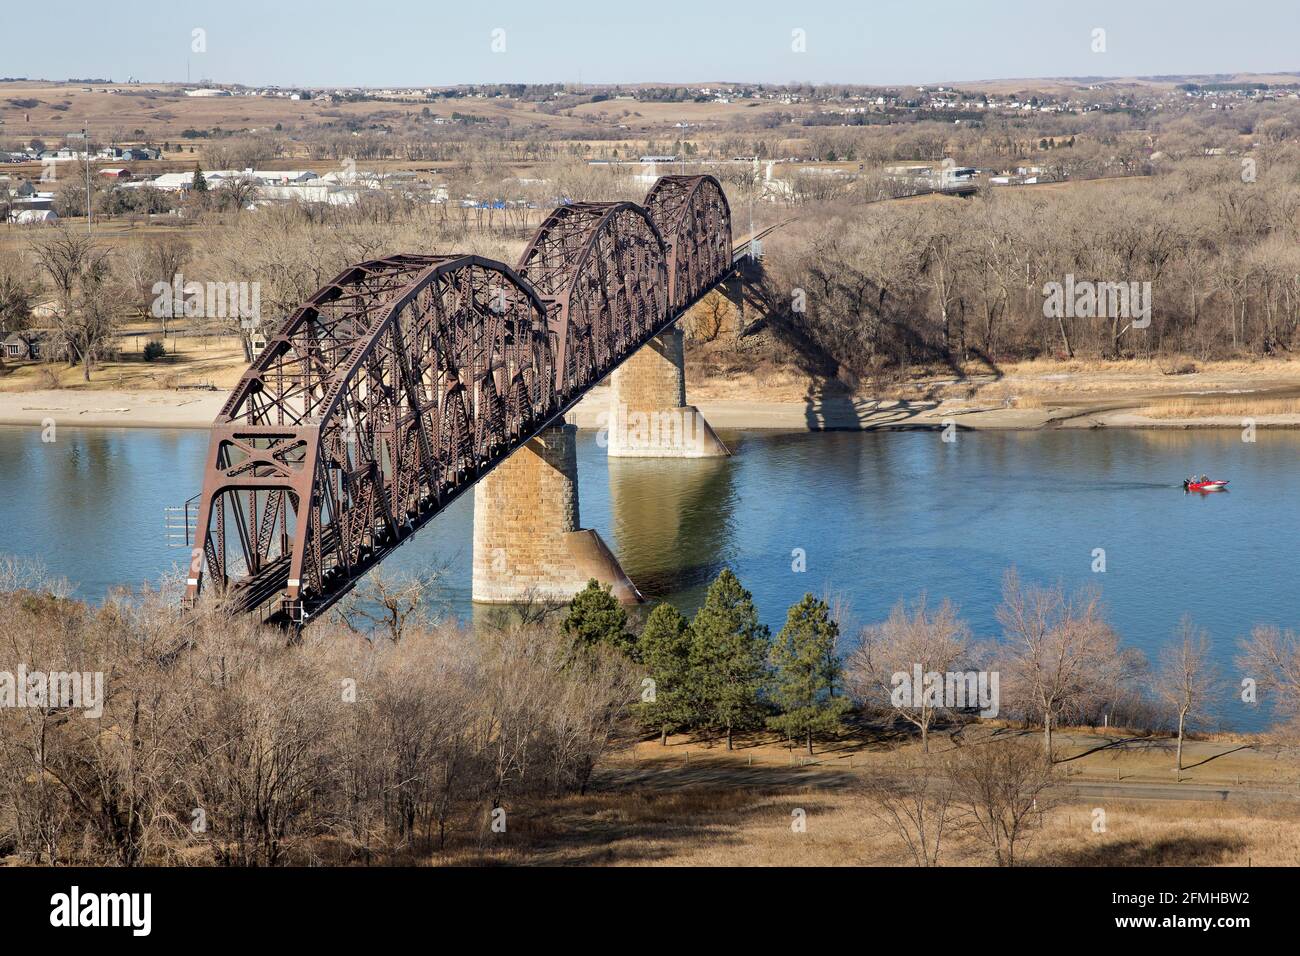 La storica infrastruttura del ponte ferroviario del Pacifico settentrionale del 1882 ora il ponte ferroviario BNSF sul fiume Missouri tra Bismarck e Mandan, North Dakota Foto Stock